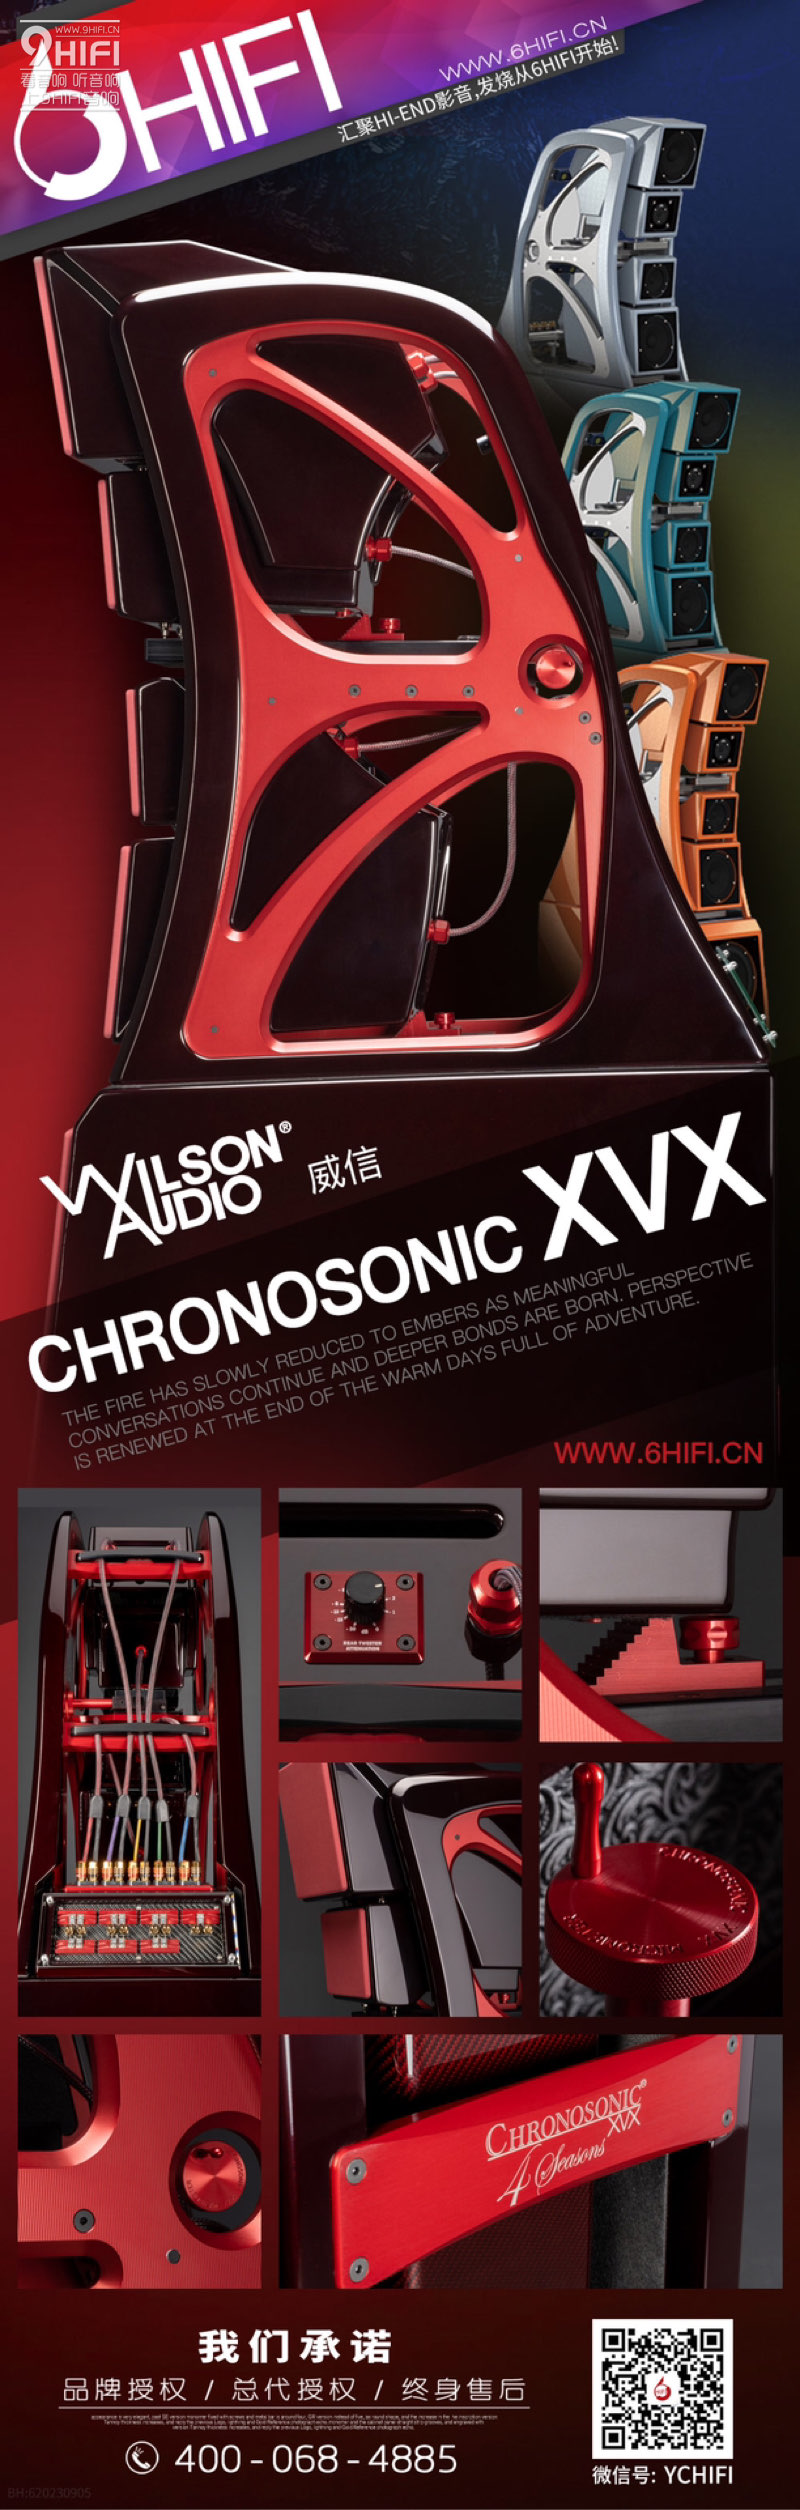 威信 Wilson Audio Chronosonic XVX 落地箱